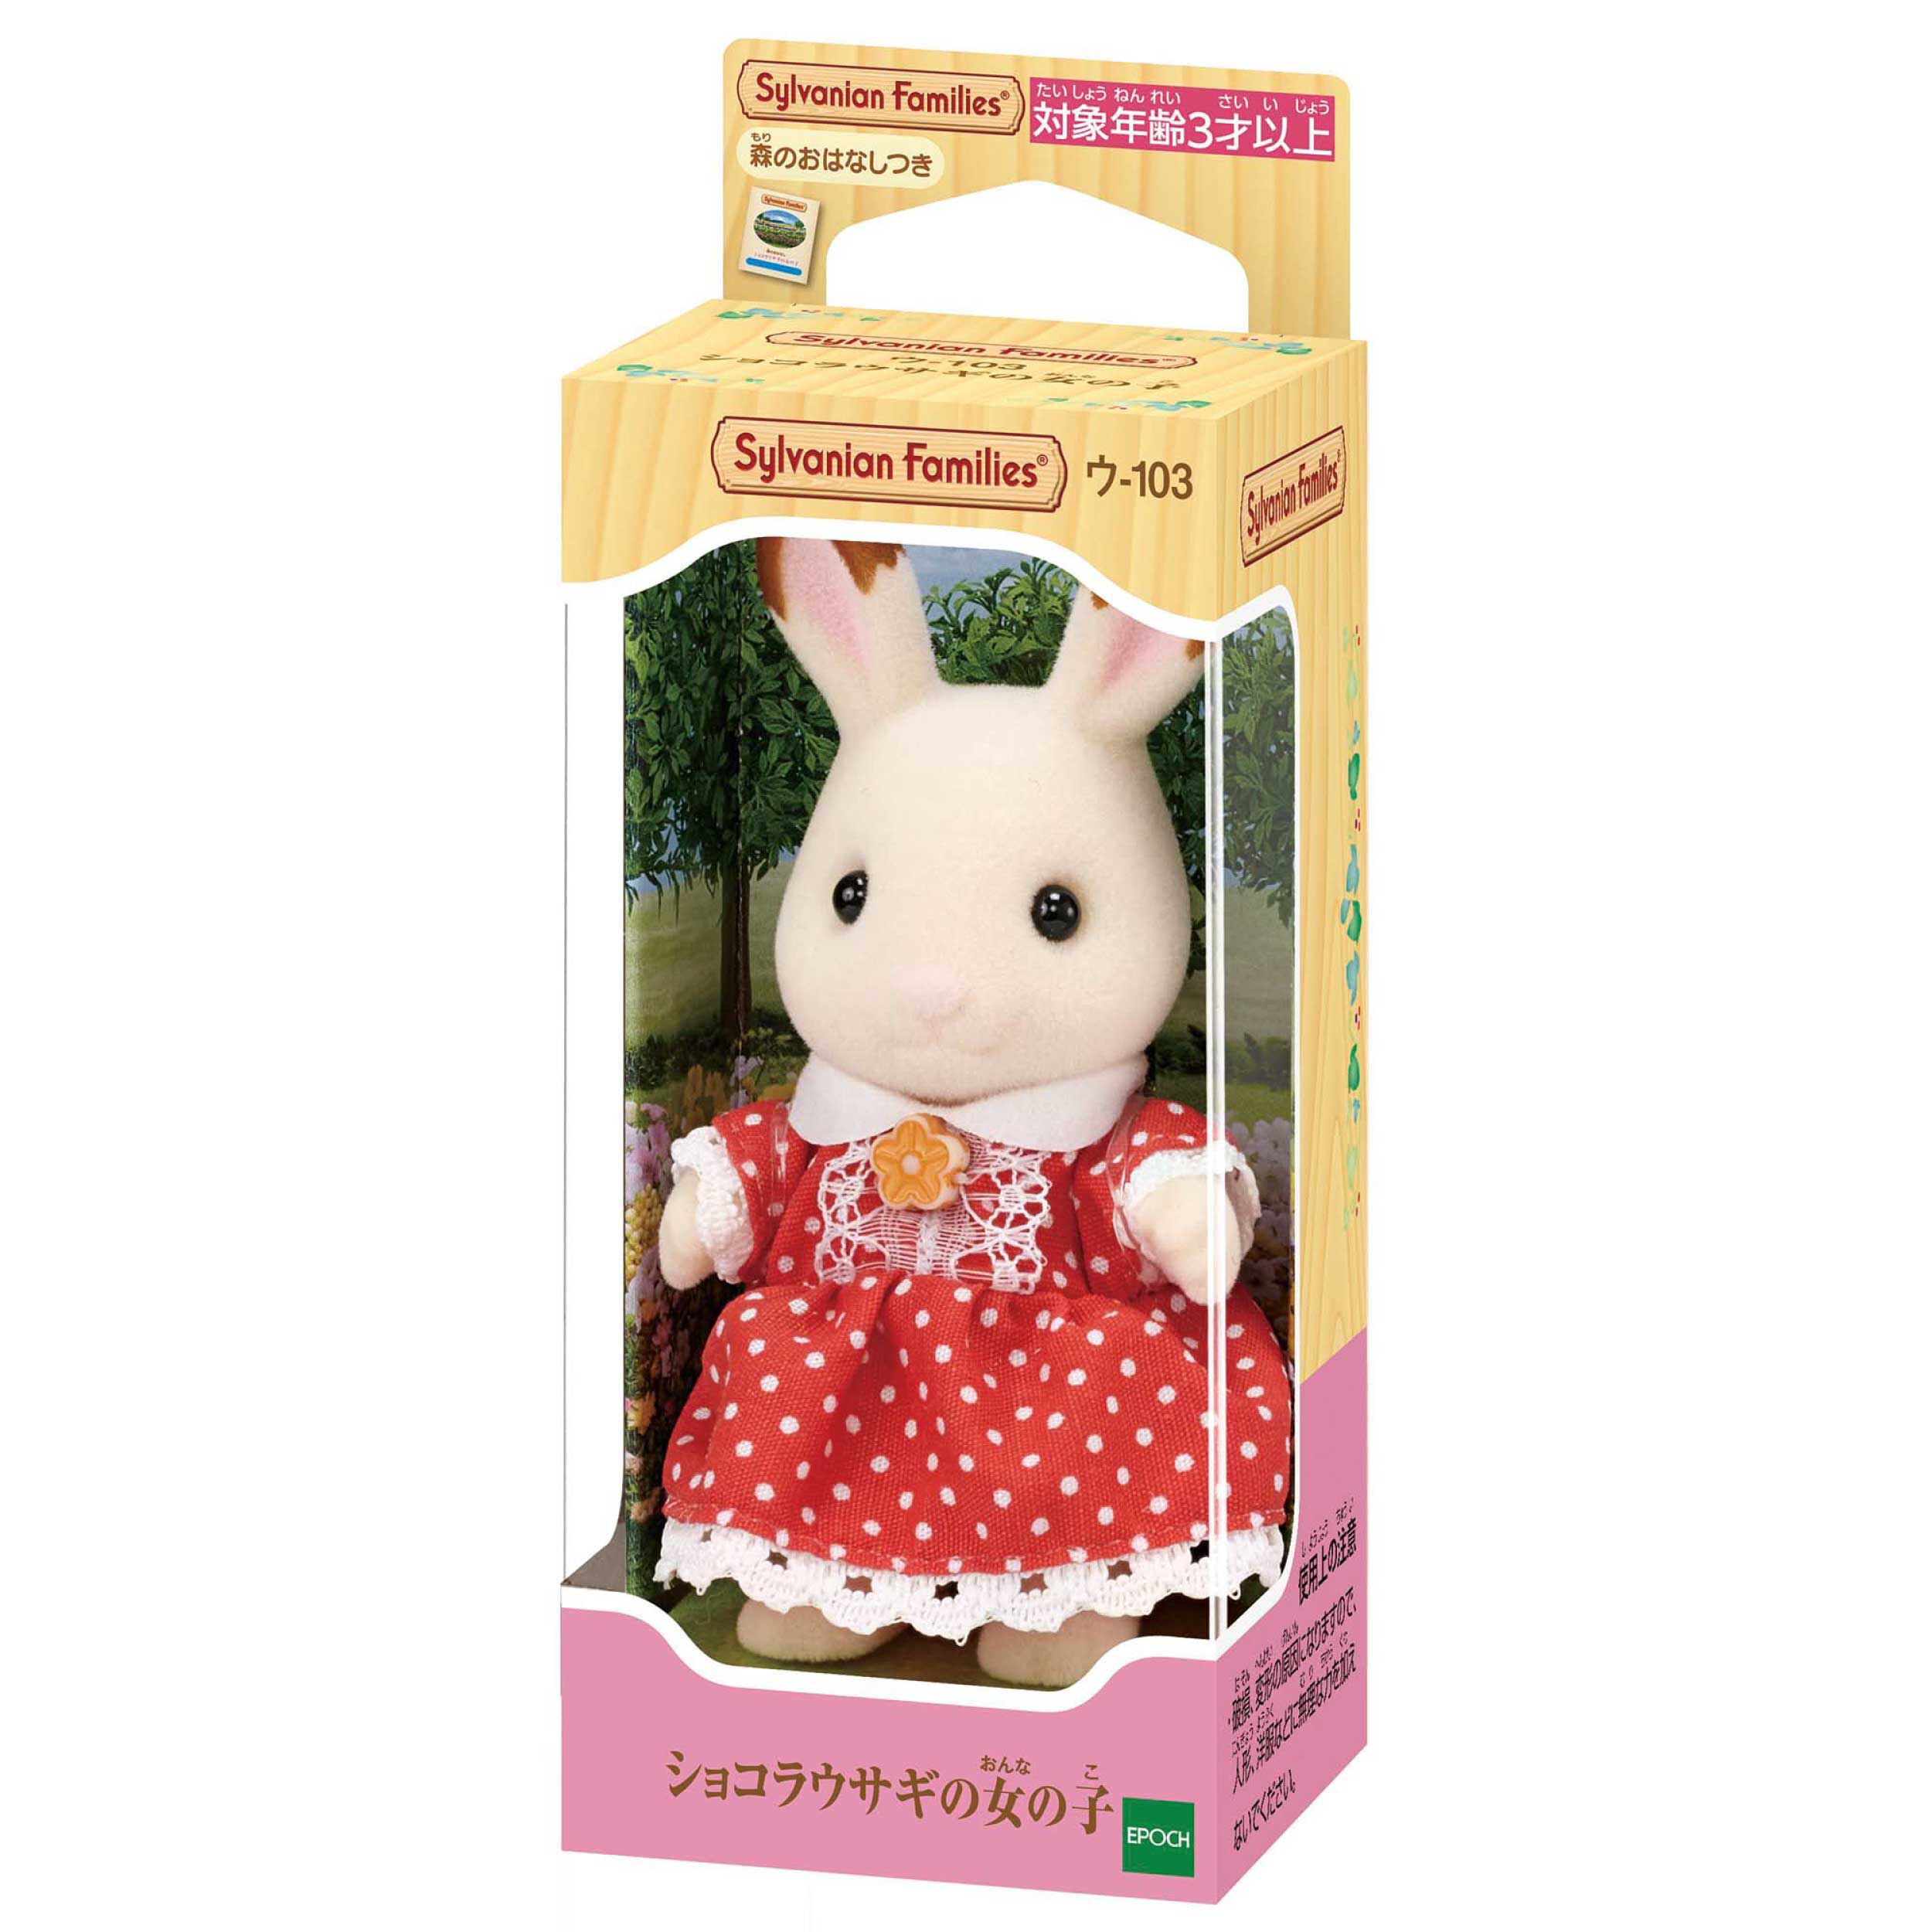 ショコラウサギの女の子 / 人形 - シルバニアファミリーオンラインショップ